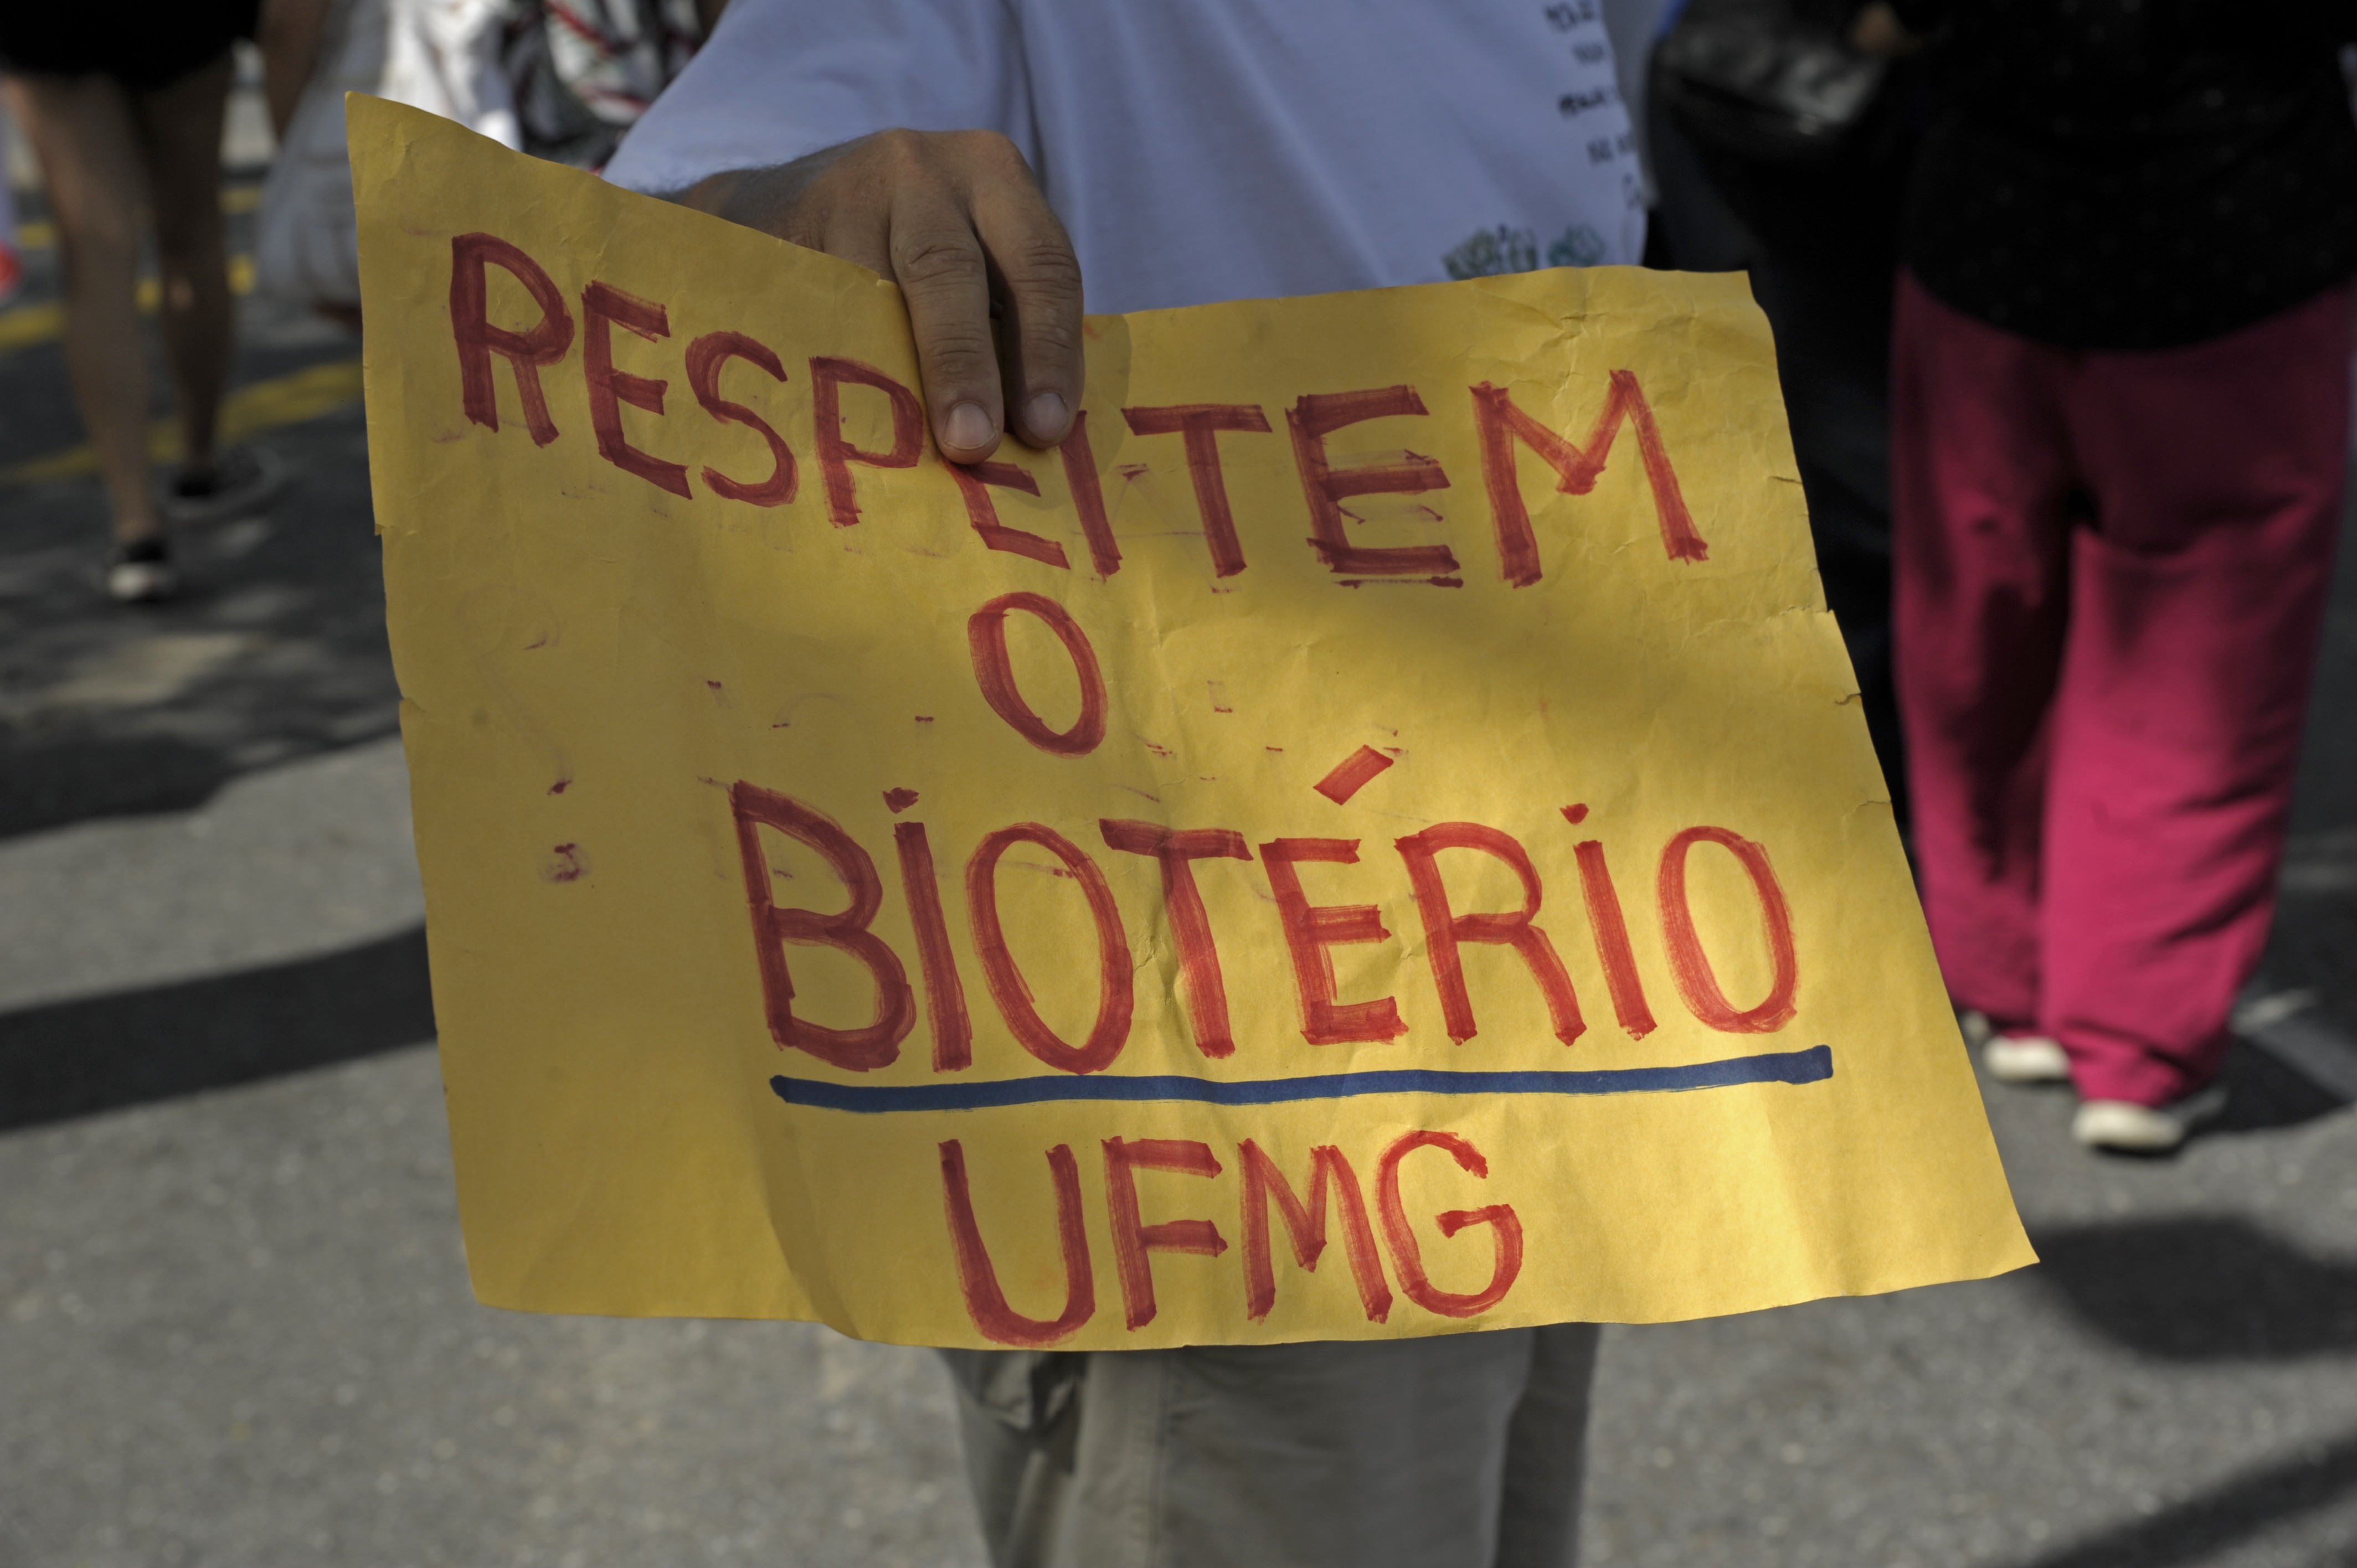 Os riscos para os animais produzidos no Biotério Central da UFMG foram lembrados no protesto